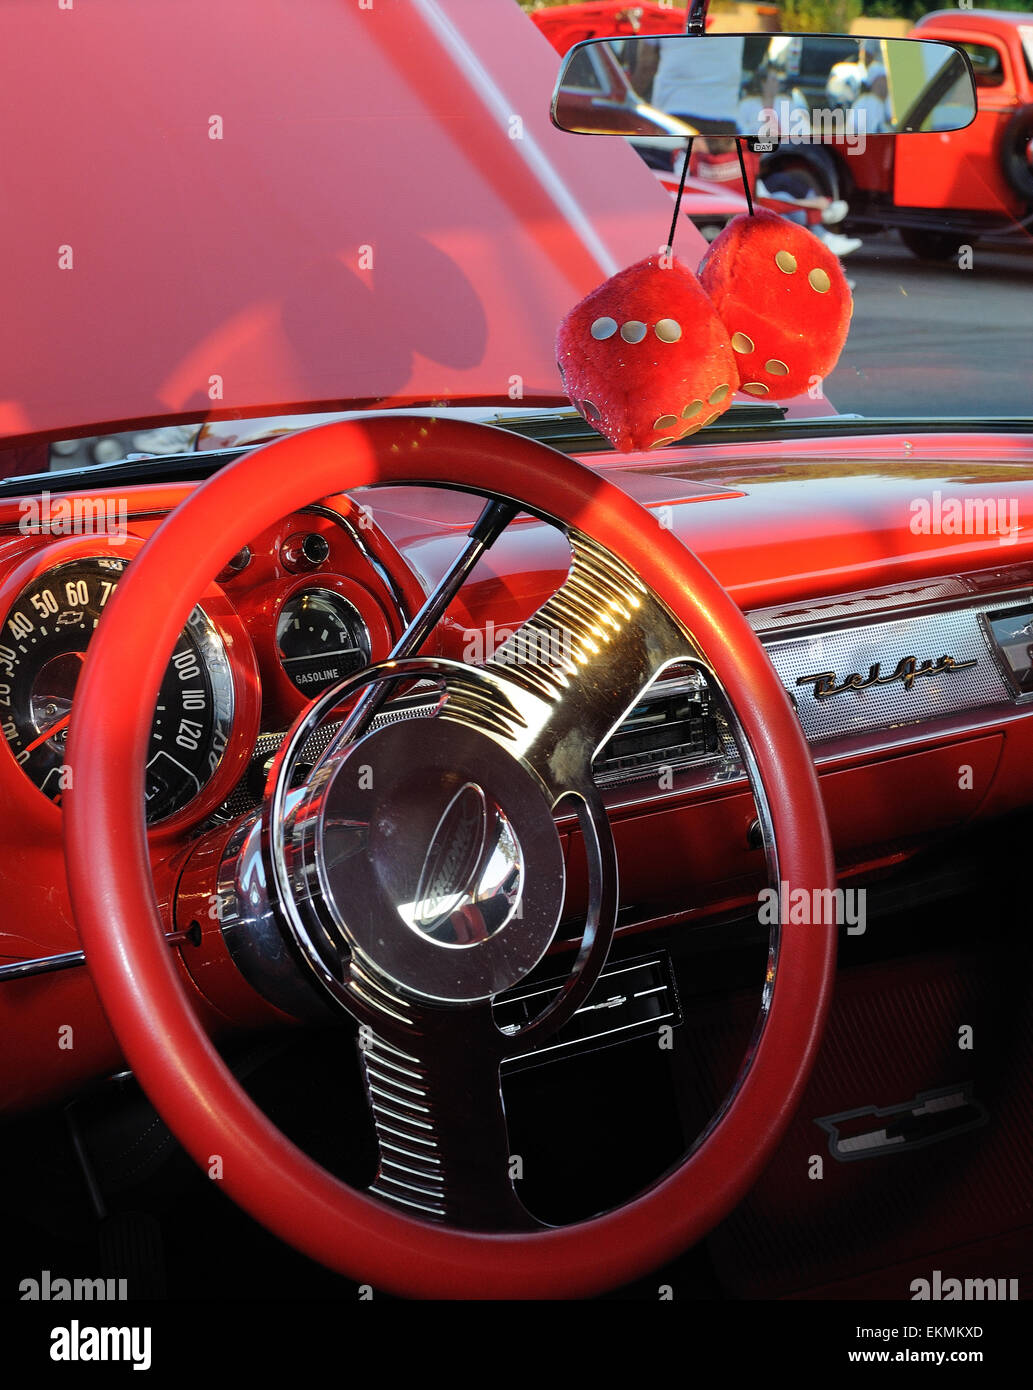 Roten fuzzy Dice hängen von einem Spiegel in einem 1957 Chevrolet. Stockfoto